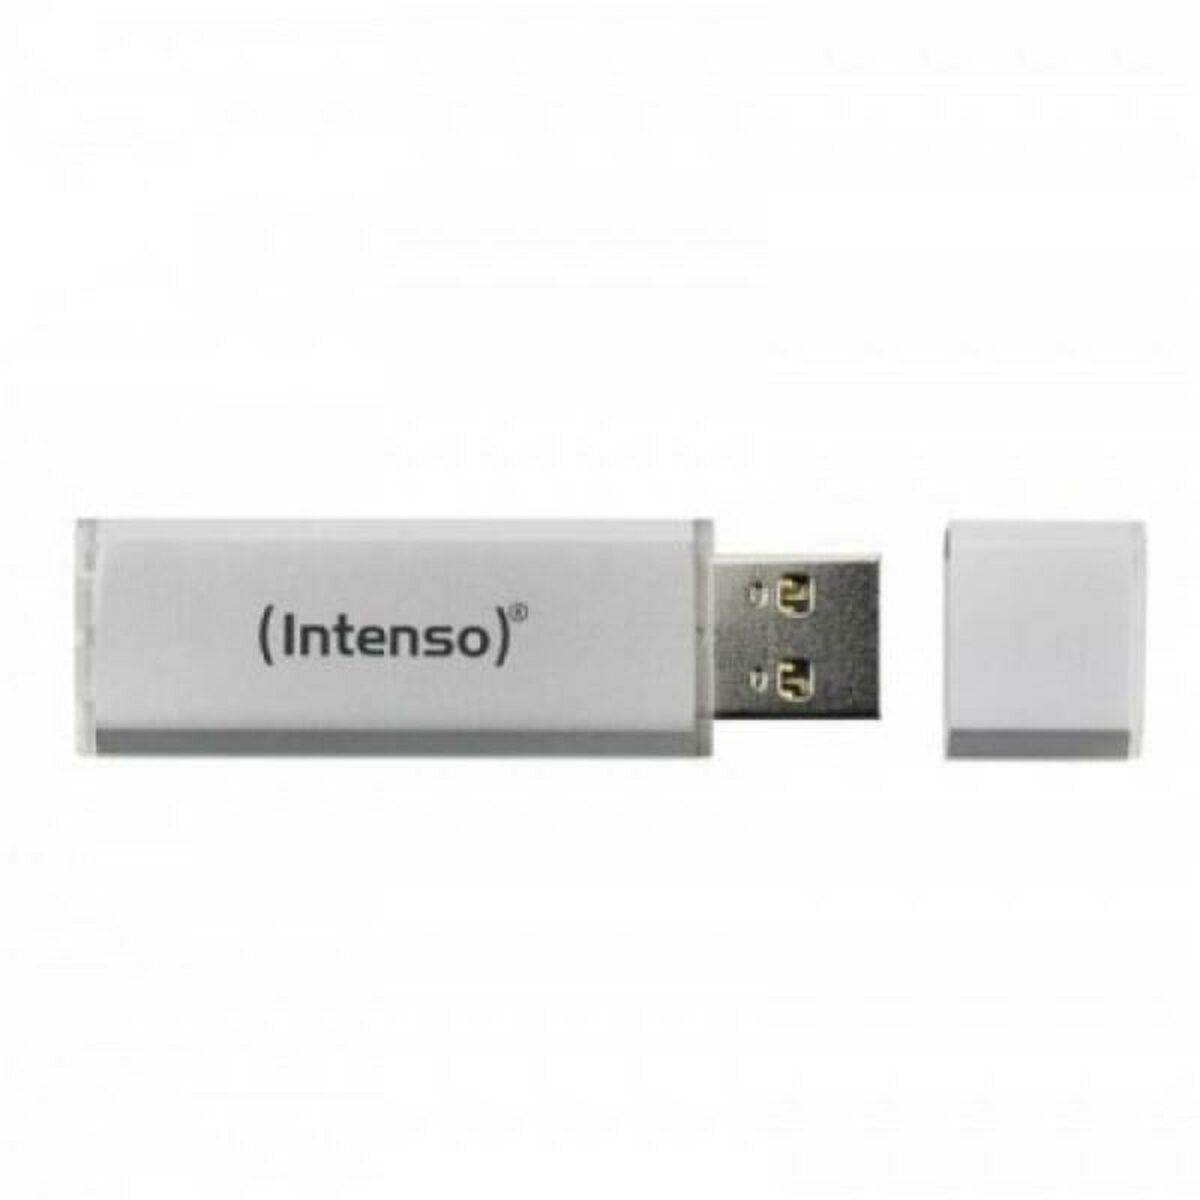 Osta tuote USB-tikku INTENSO 3531490 USB 3.0 64 GB USB-tikku verkkokaupastamme Korhone: Tietokoneet & Elektroniikka 10% alennuksella koodilla KORHONE